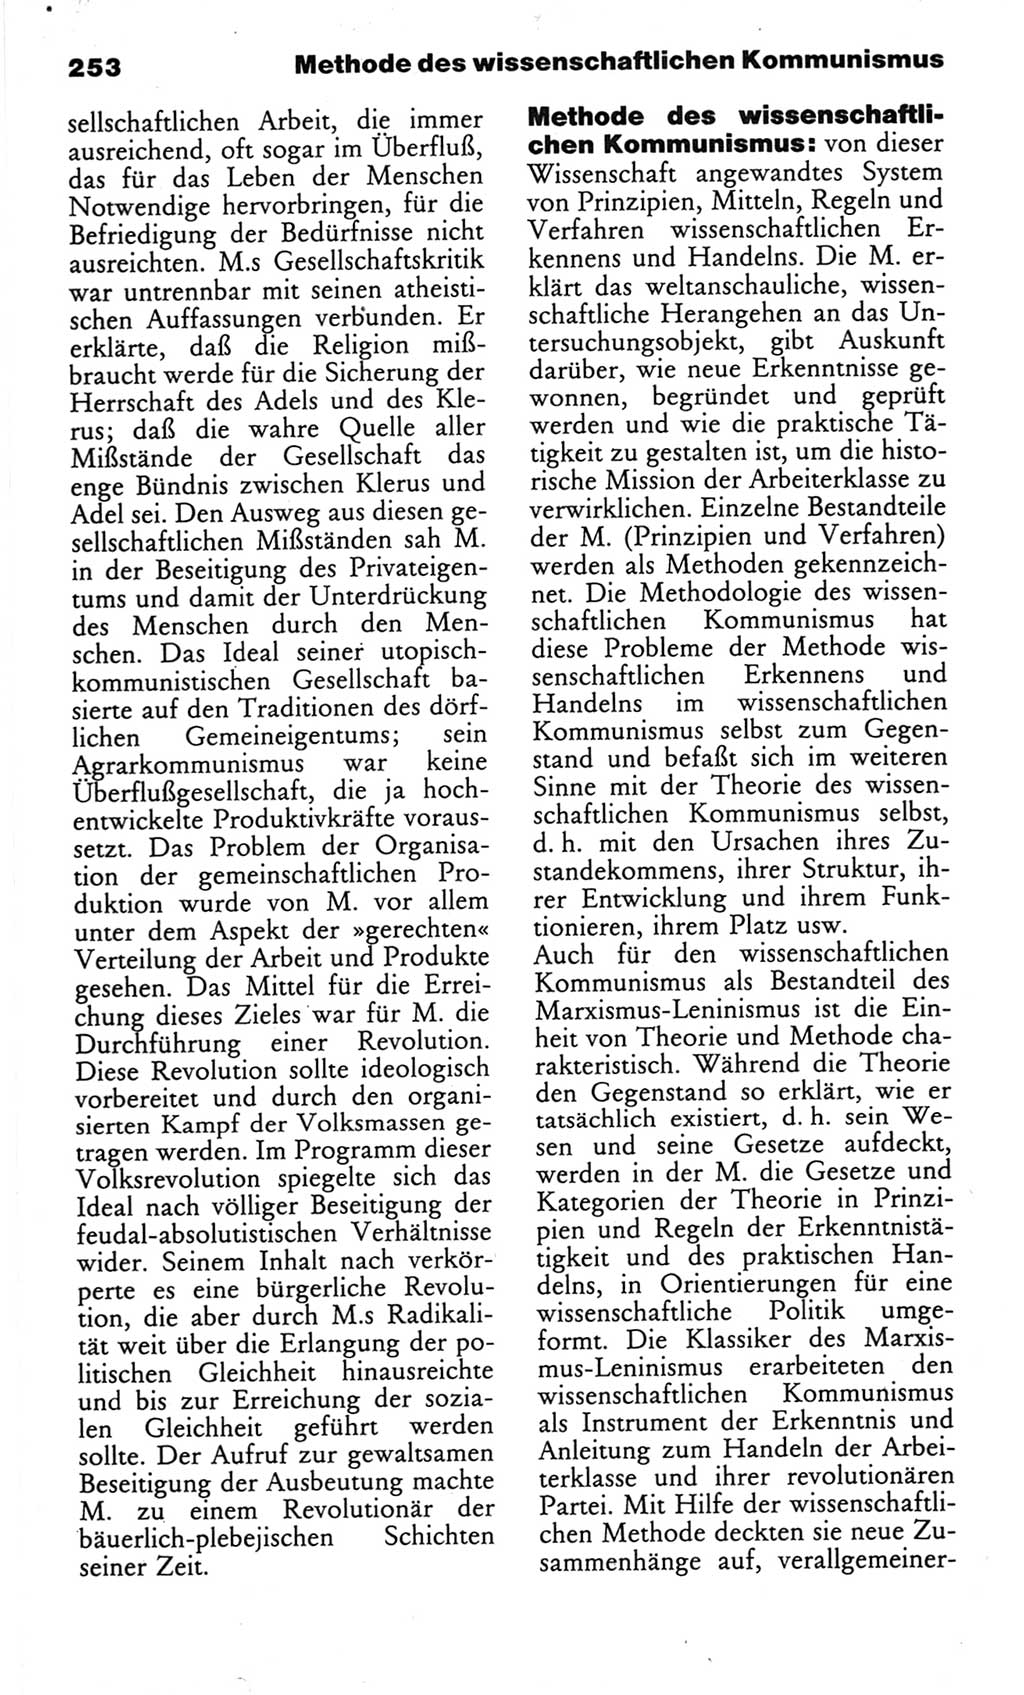 Wörterbuch des wissenschaftlichen Kommunismus [Deutsche Demokratische Republik (DDR)] 1982, Seite 253 (Wb. wiss. Komm. DDR 1982, S. 253)